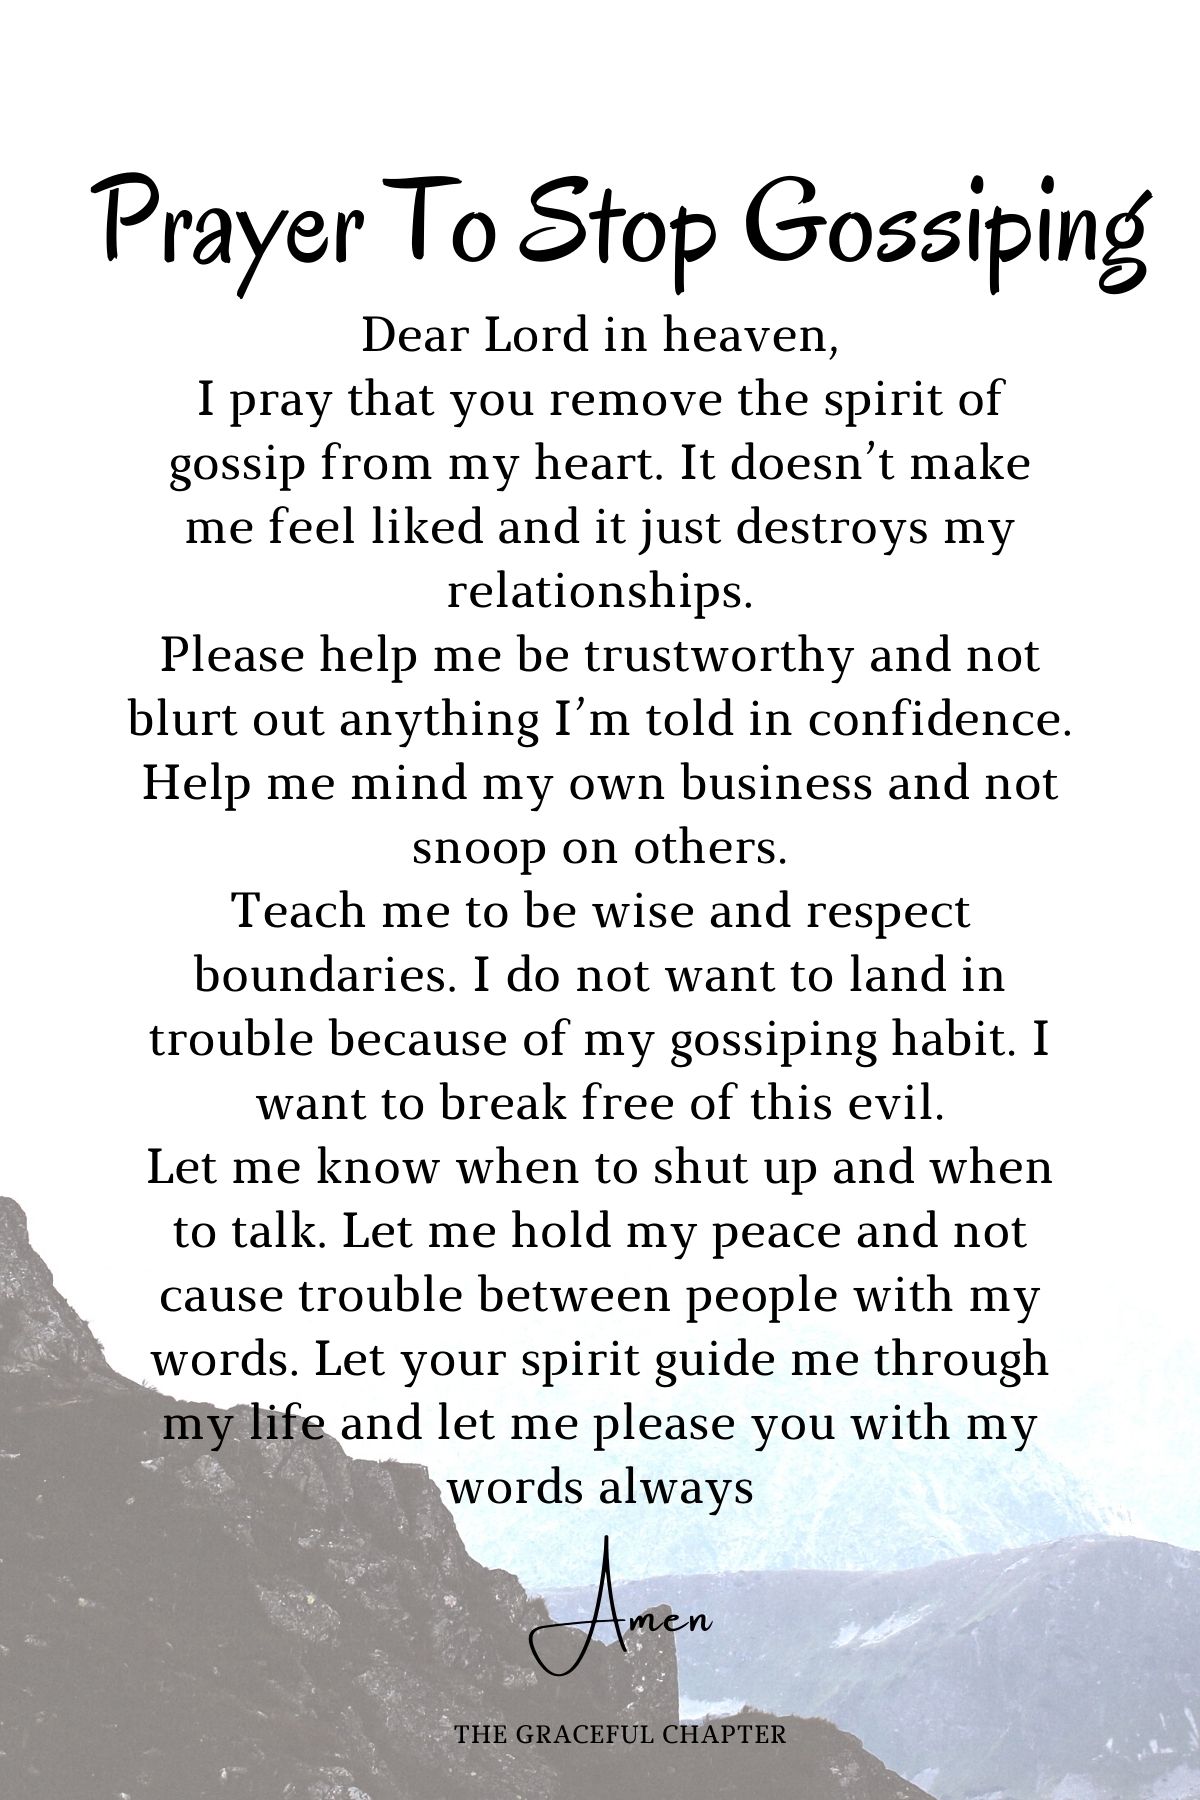 Prayer to stop gossiping